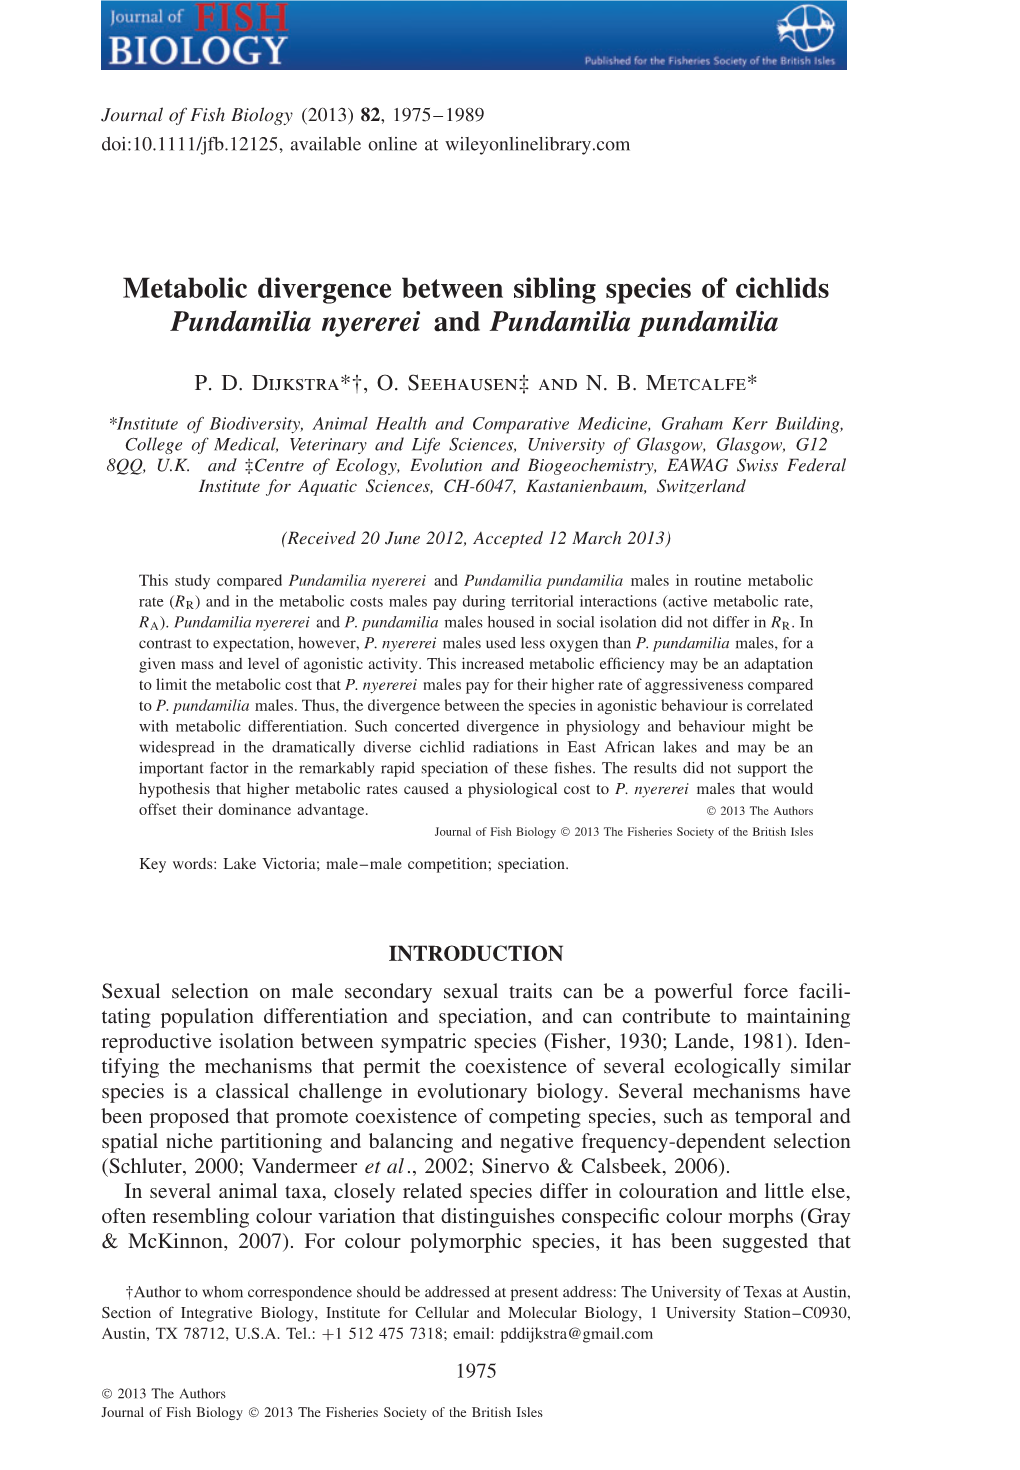 Metabolic Divergence Between Sibling Species of Cichlids Pundamilia Nyererei and Pundamilia Pundamilia